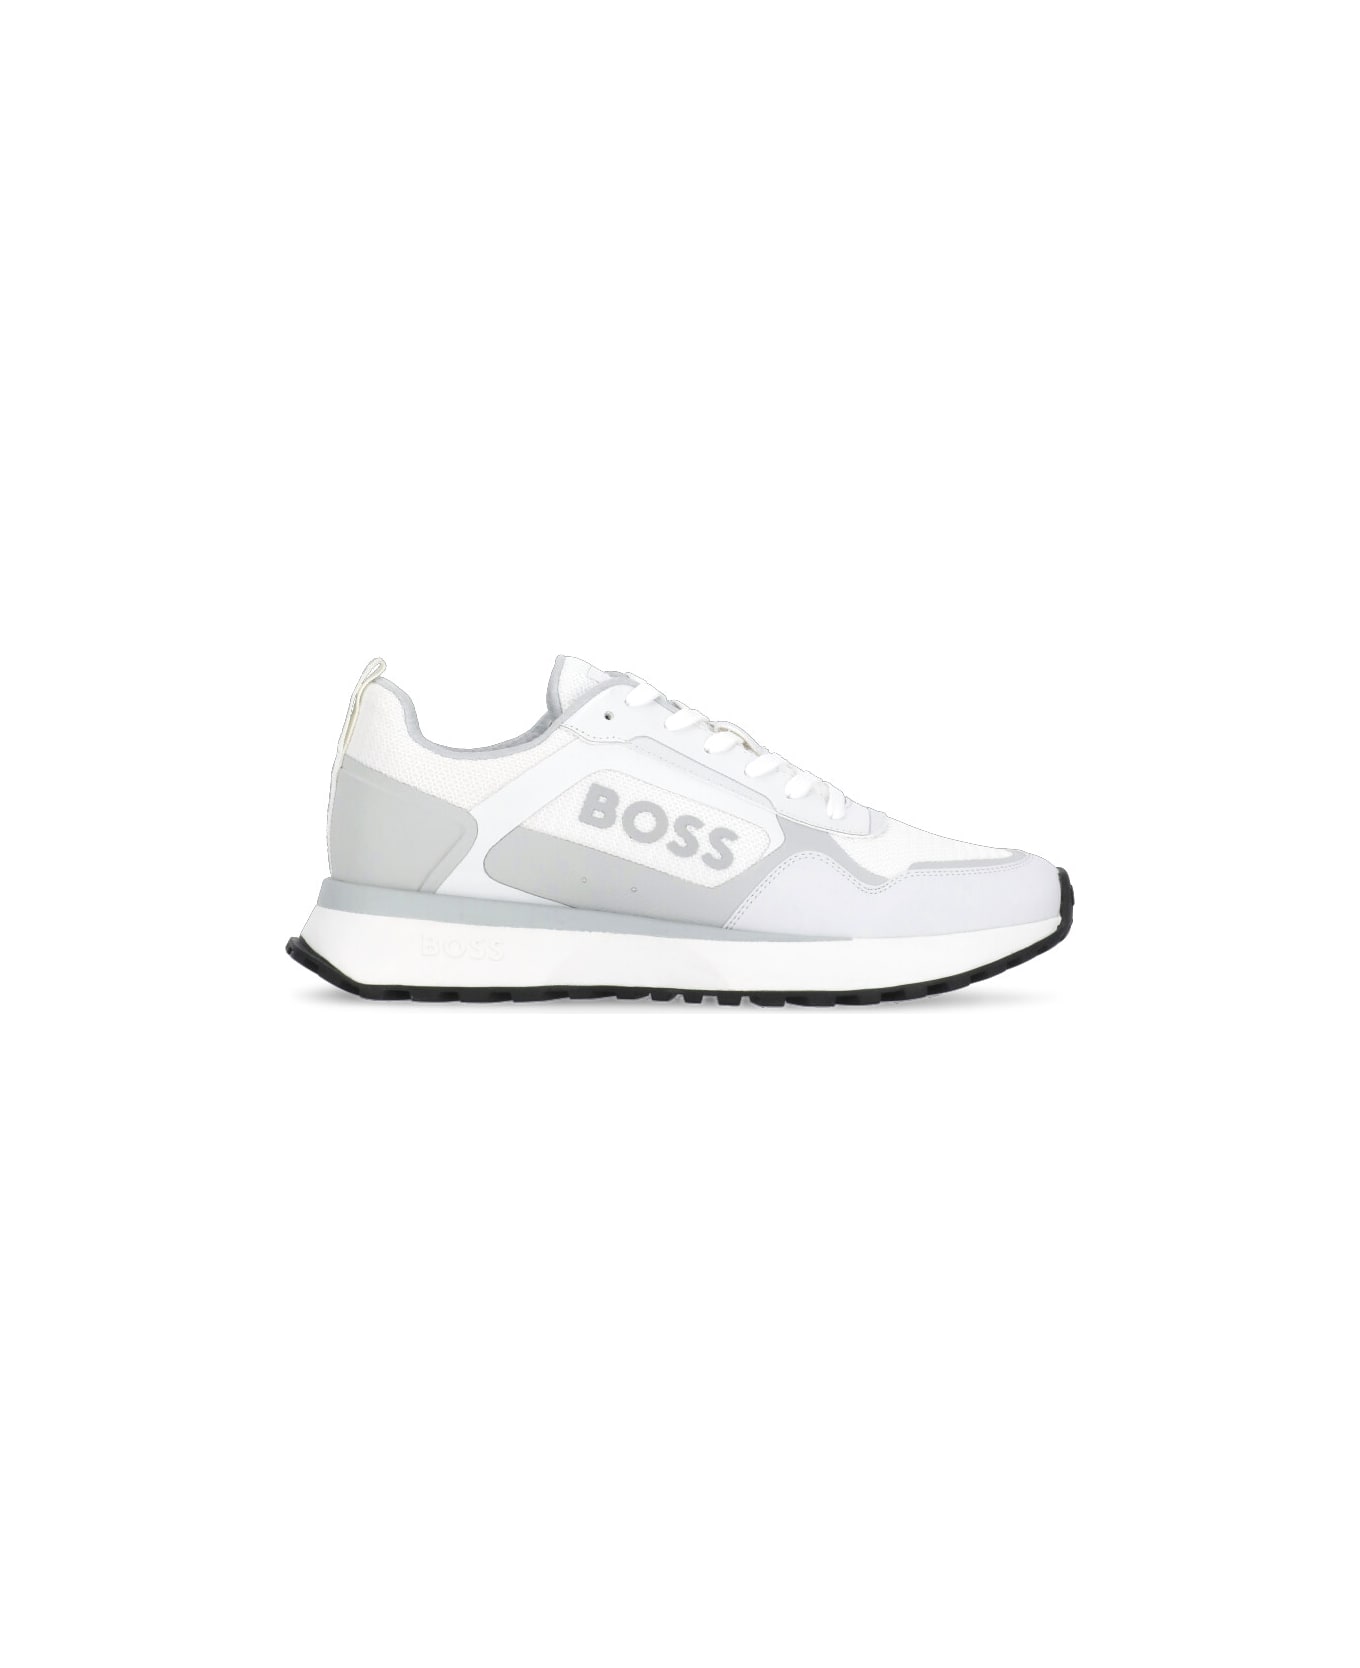 Hugo Boss Johan Runn Sneakers - White